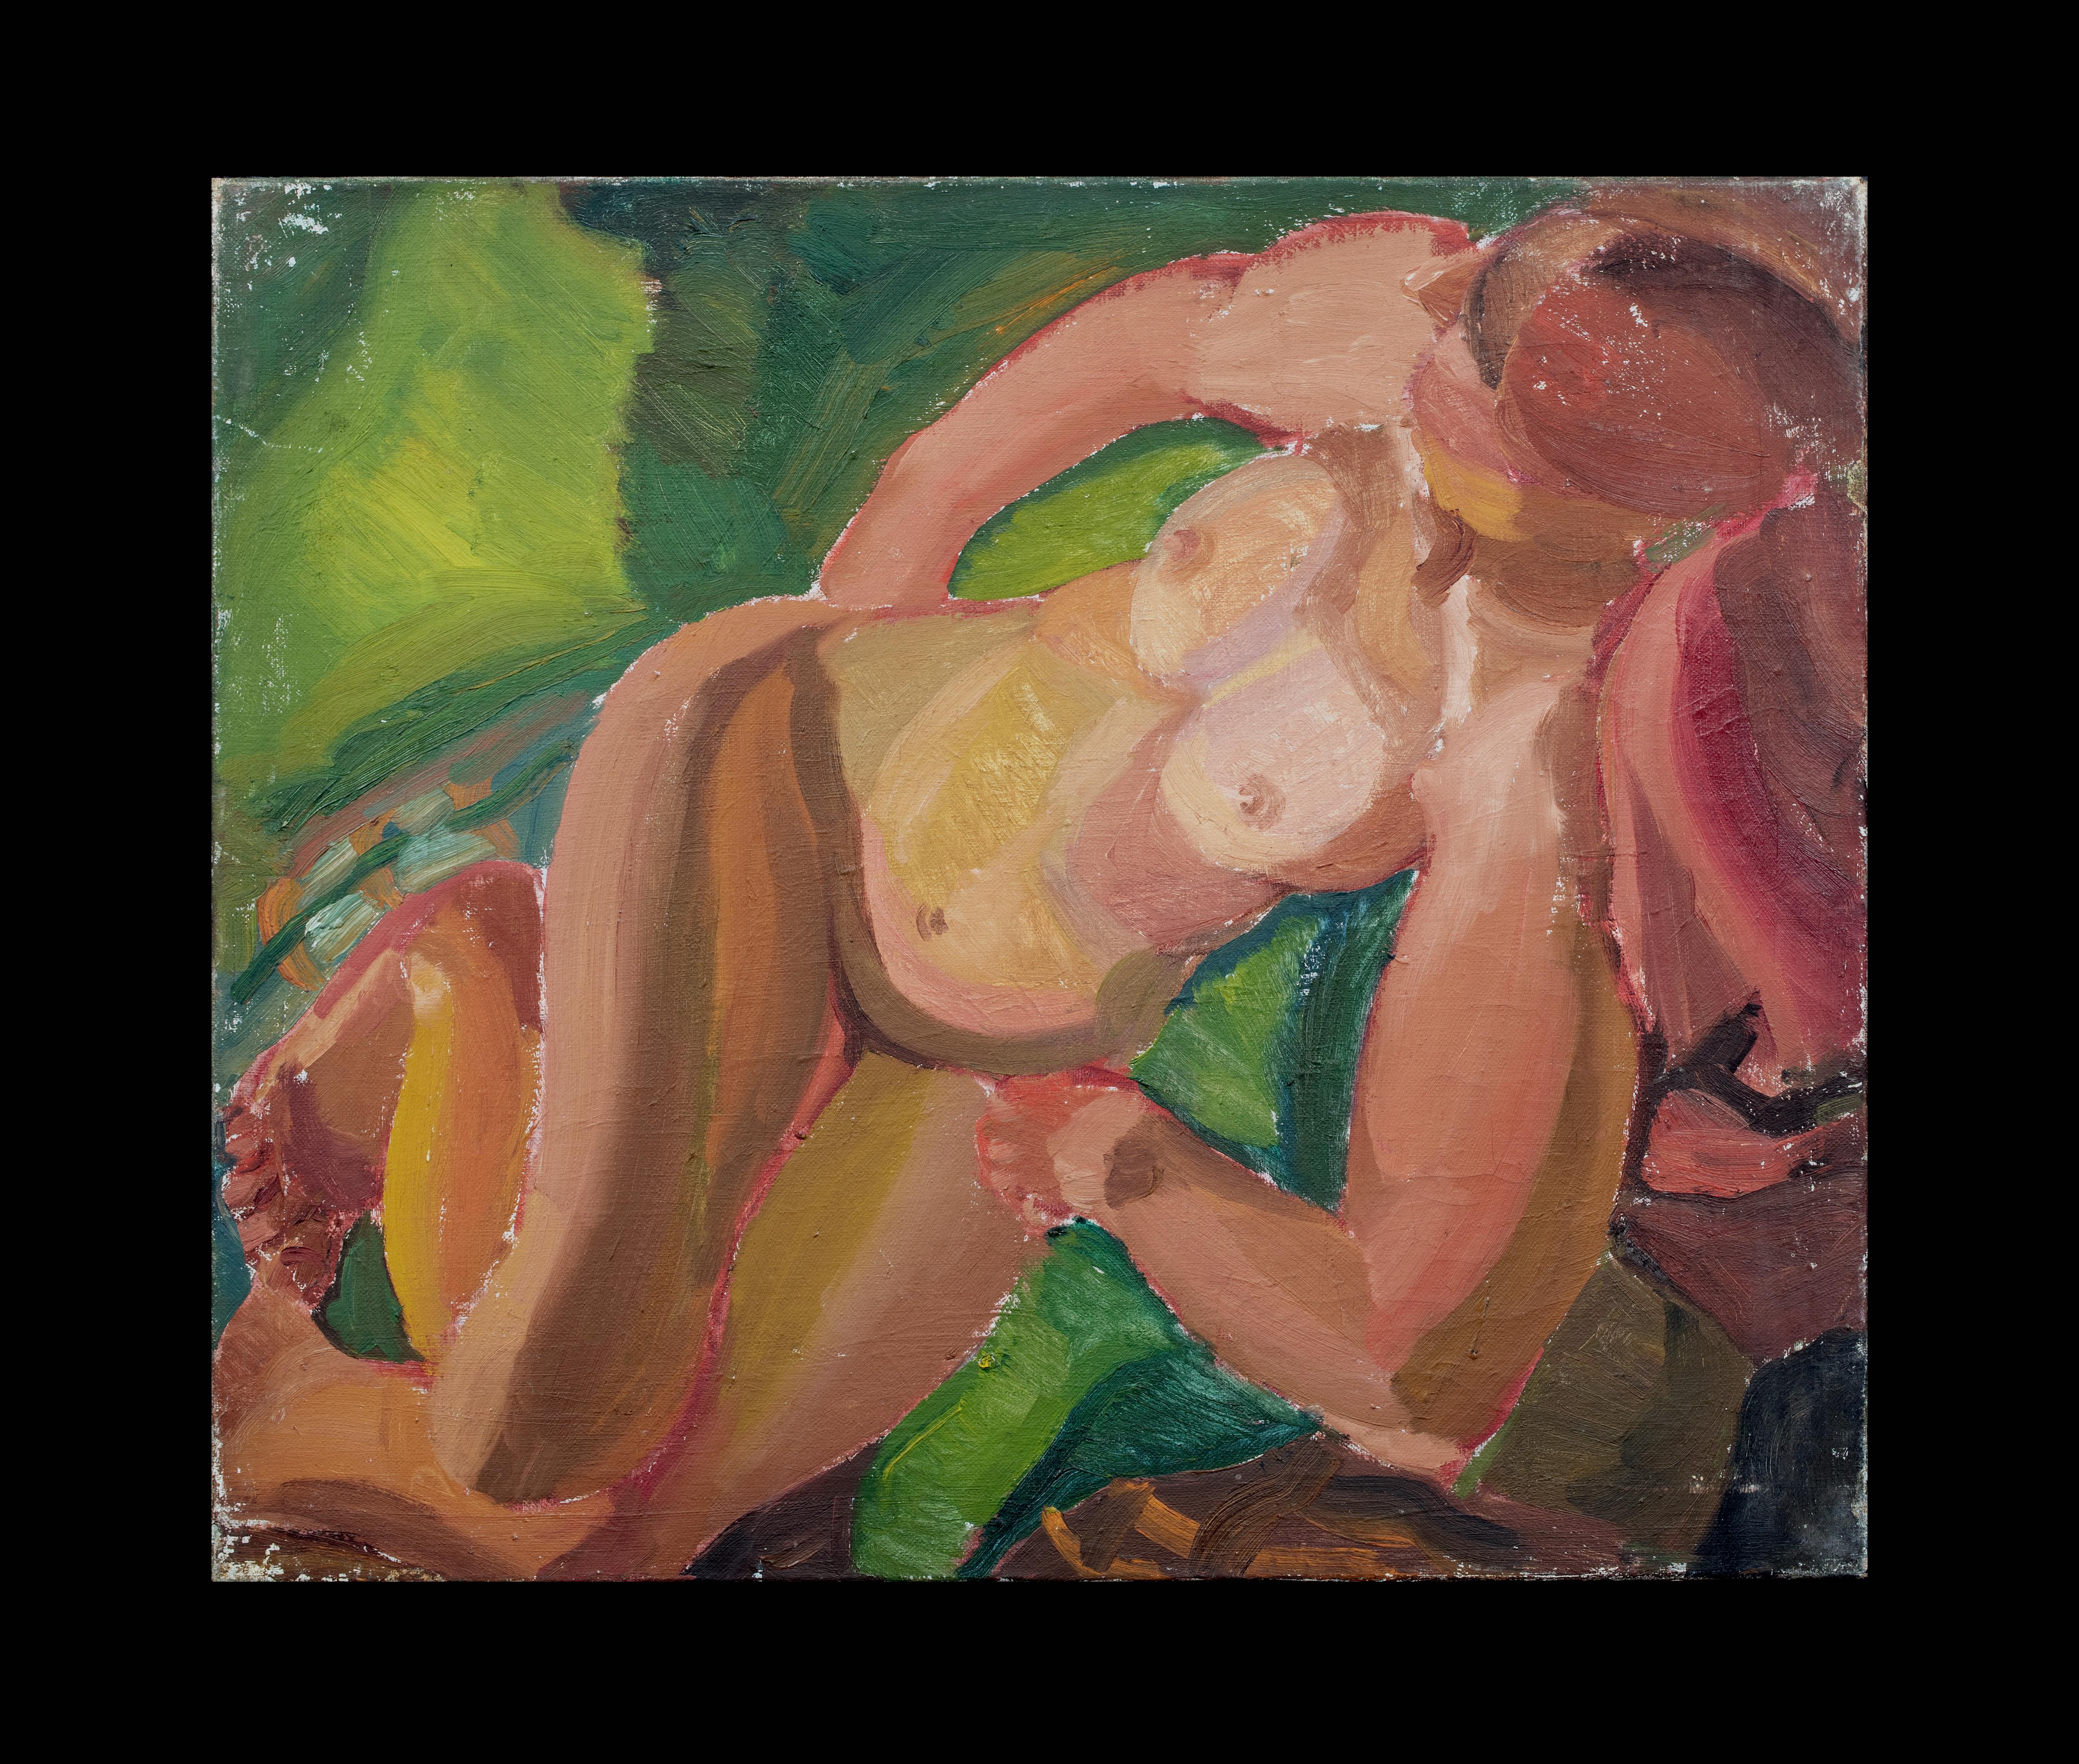 Liegesessel, Akt, frühes 20. Jahrhundert   von Harry Barr (1896-1987) – Painting von Unknown